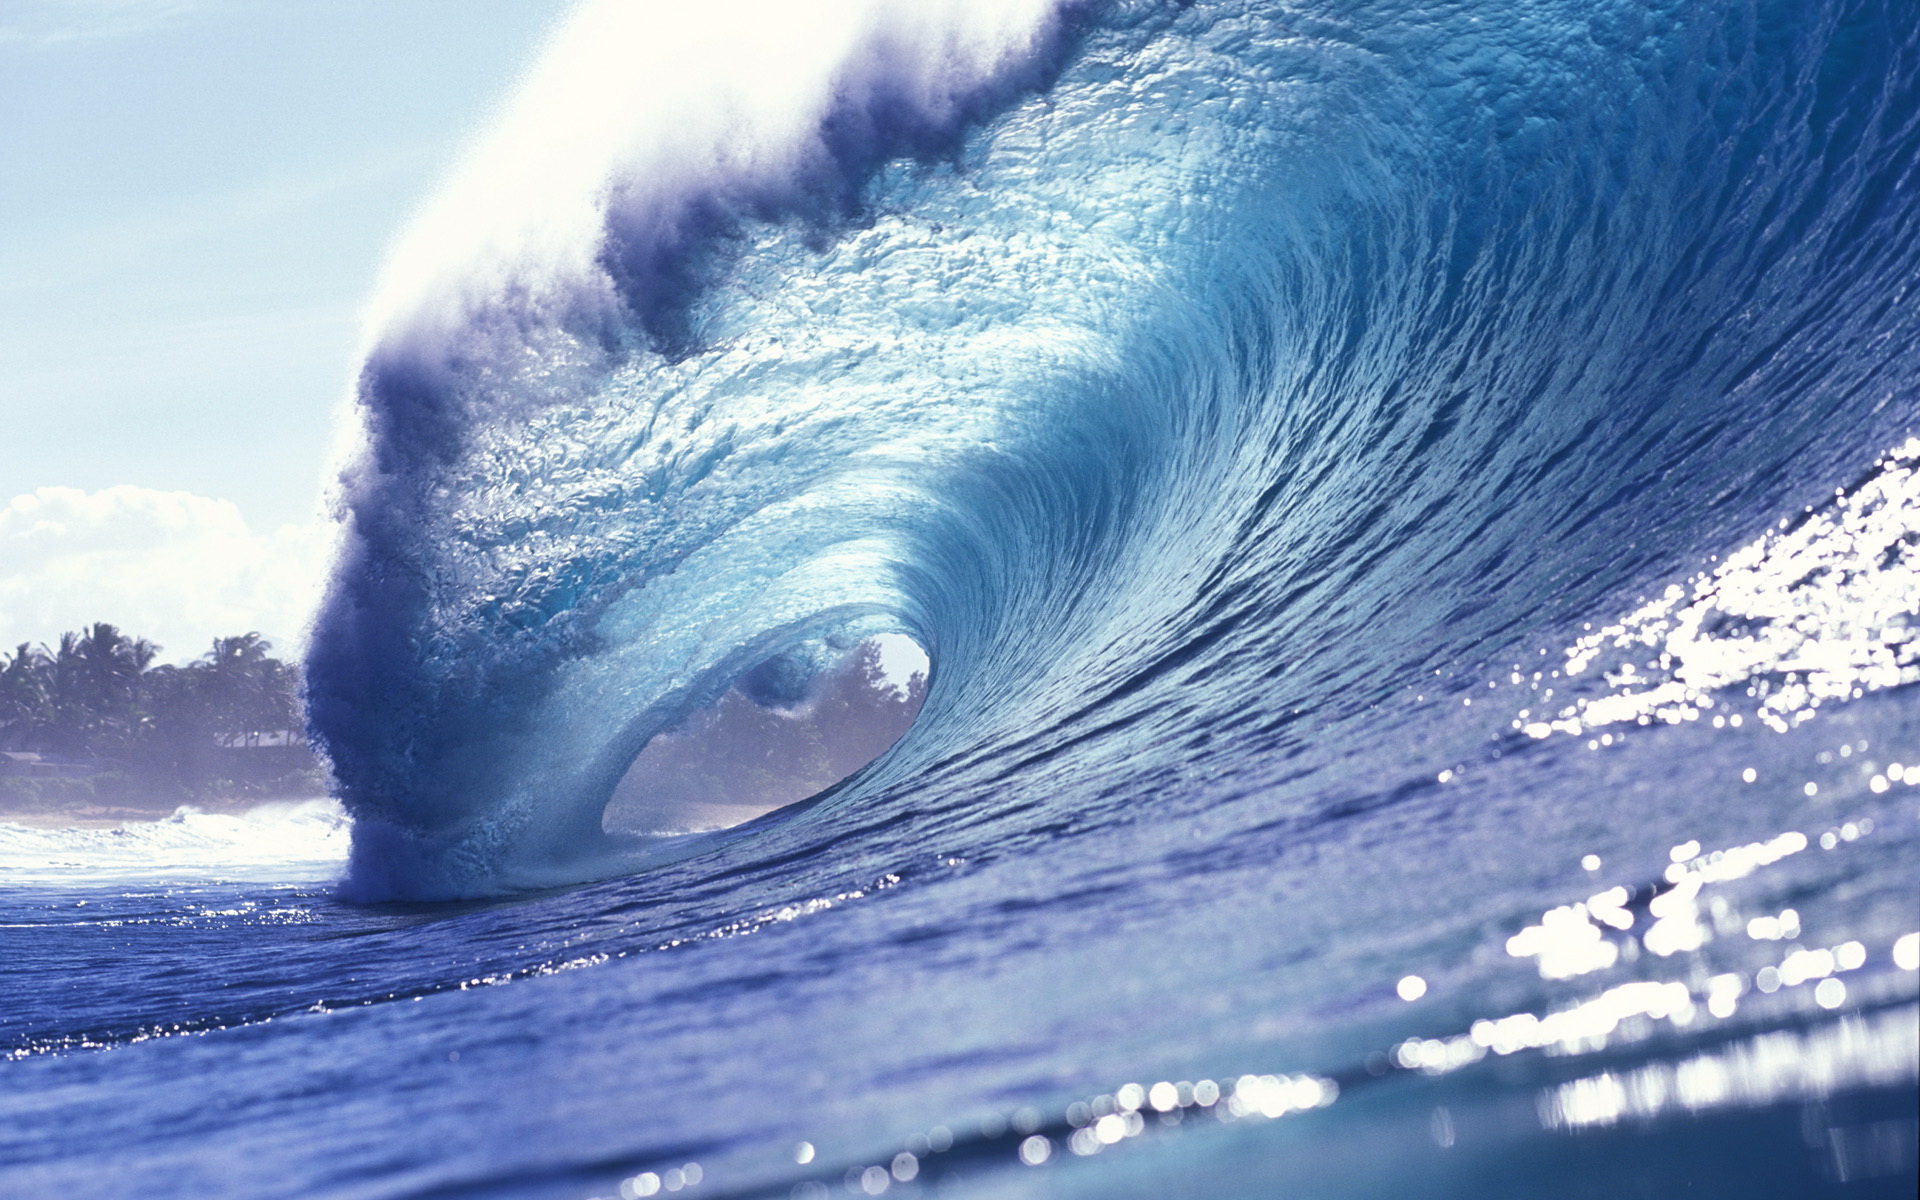 Hình nền sóng: Bạn đã bao giờ tận hưởng trọn vẹn vẻ đẹp của những cánh sóng không? Hãy xem ngay hình nền sóng, với ánh nắng lung linh cùng màu sắc tươi tắn, mang lại cho bạn một không gian hoàn toàn mới. Điều này giúp bạn giải tỏa căng thẳng cho năng lượng khiến gia đình bạn vui vẻ hơn.